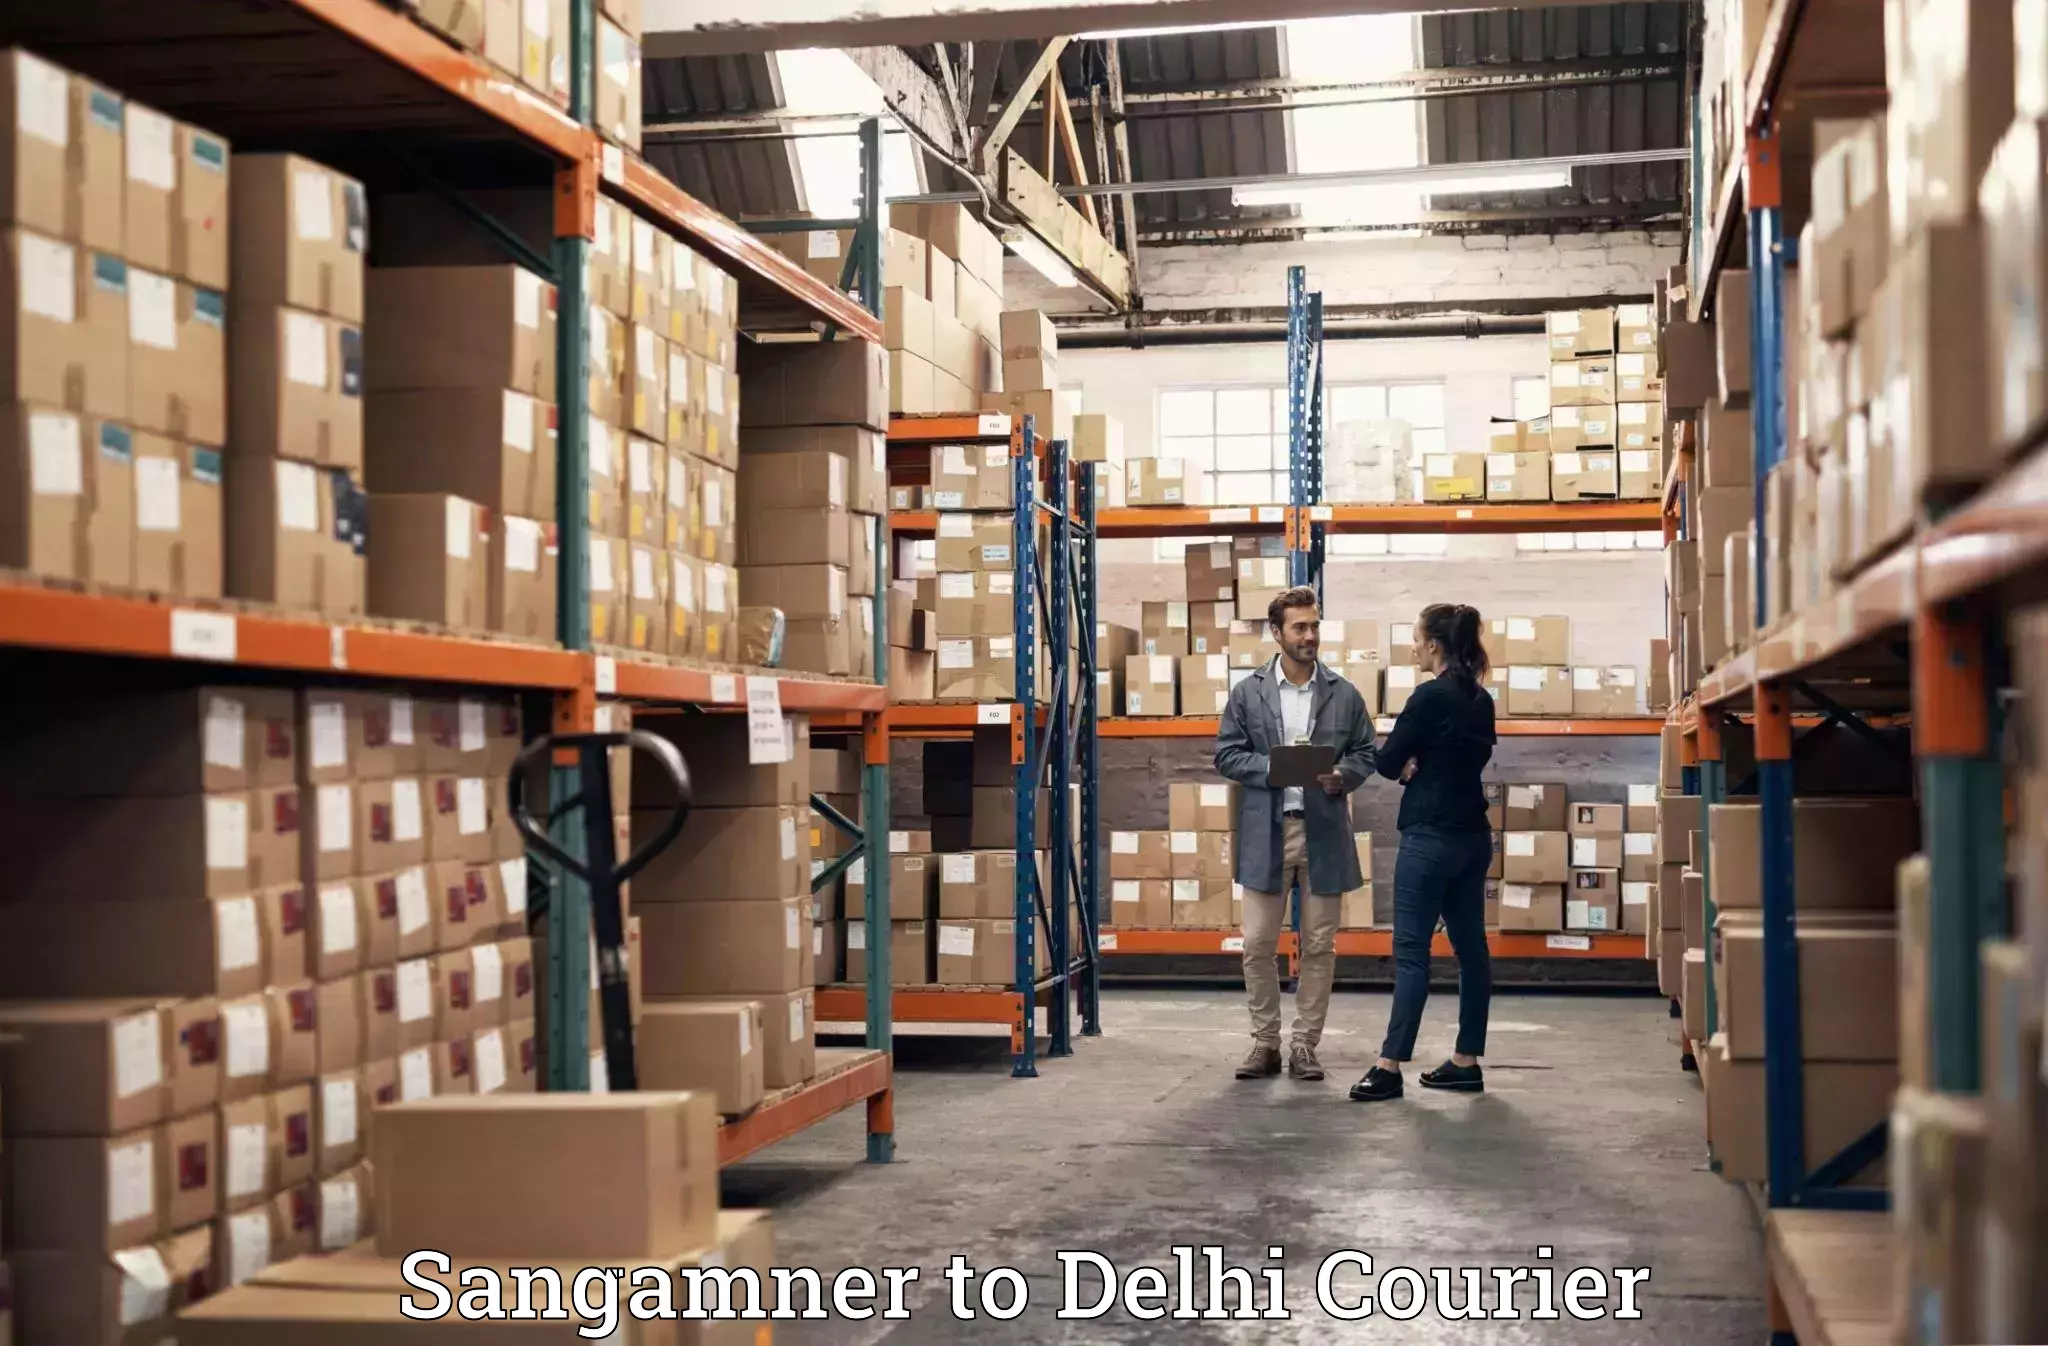 Baggage transport scheduler Sangamner to East Delhi